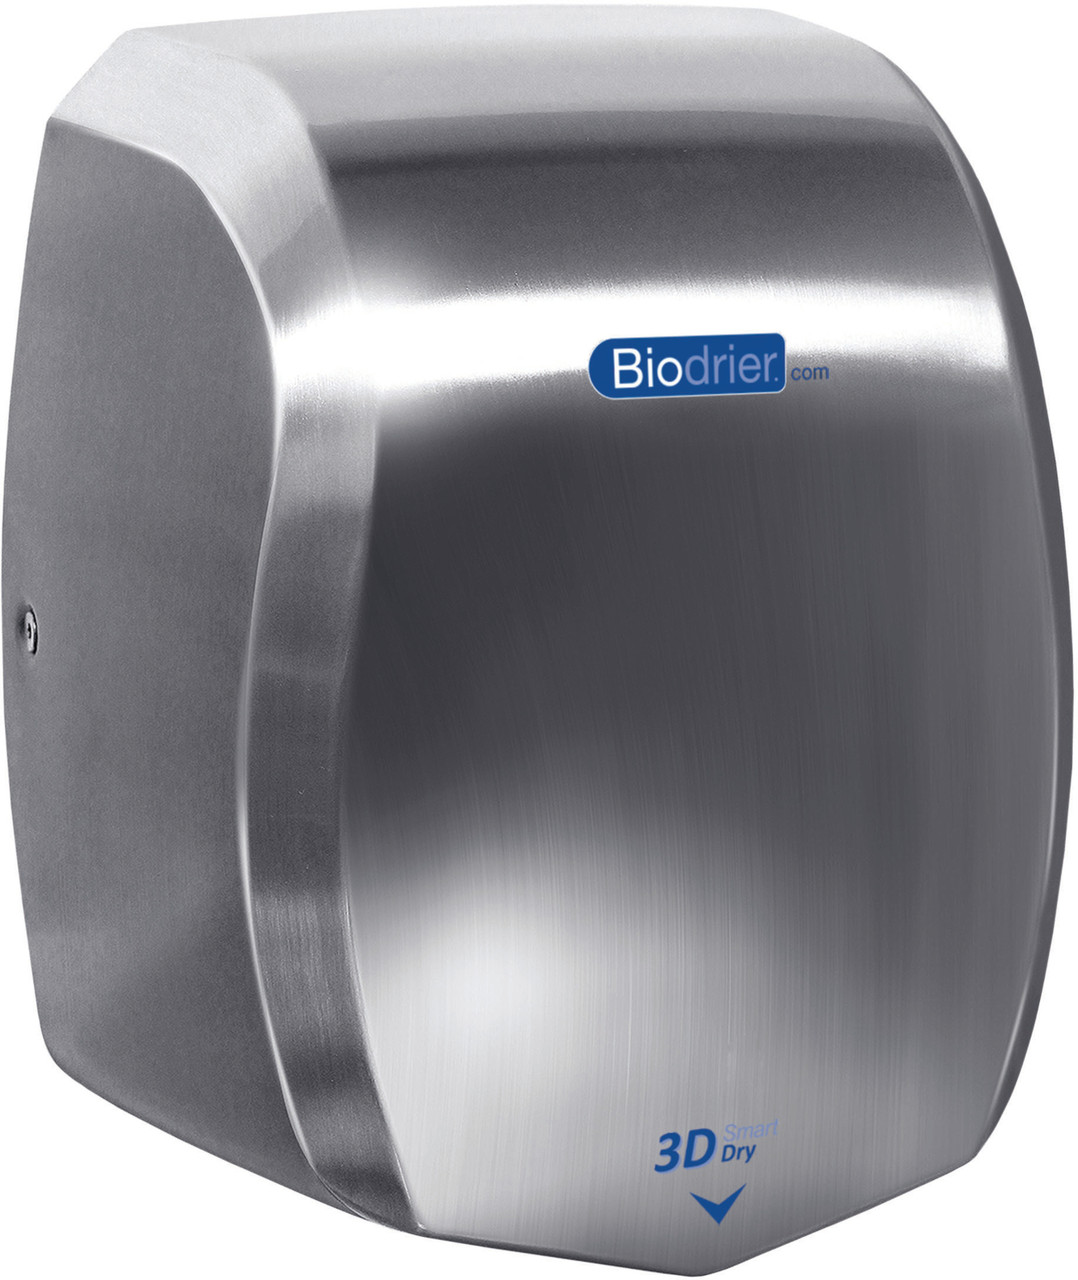 HD-BSD60KP - Biodrier 3D Smart Dry Plus Hand Dryer - Stainless Steel